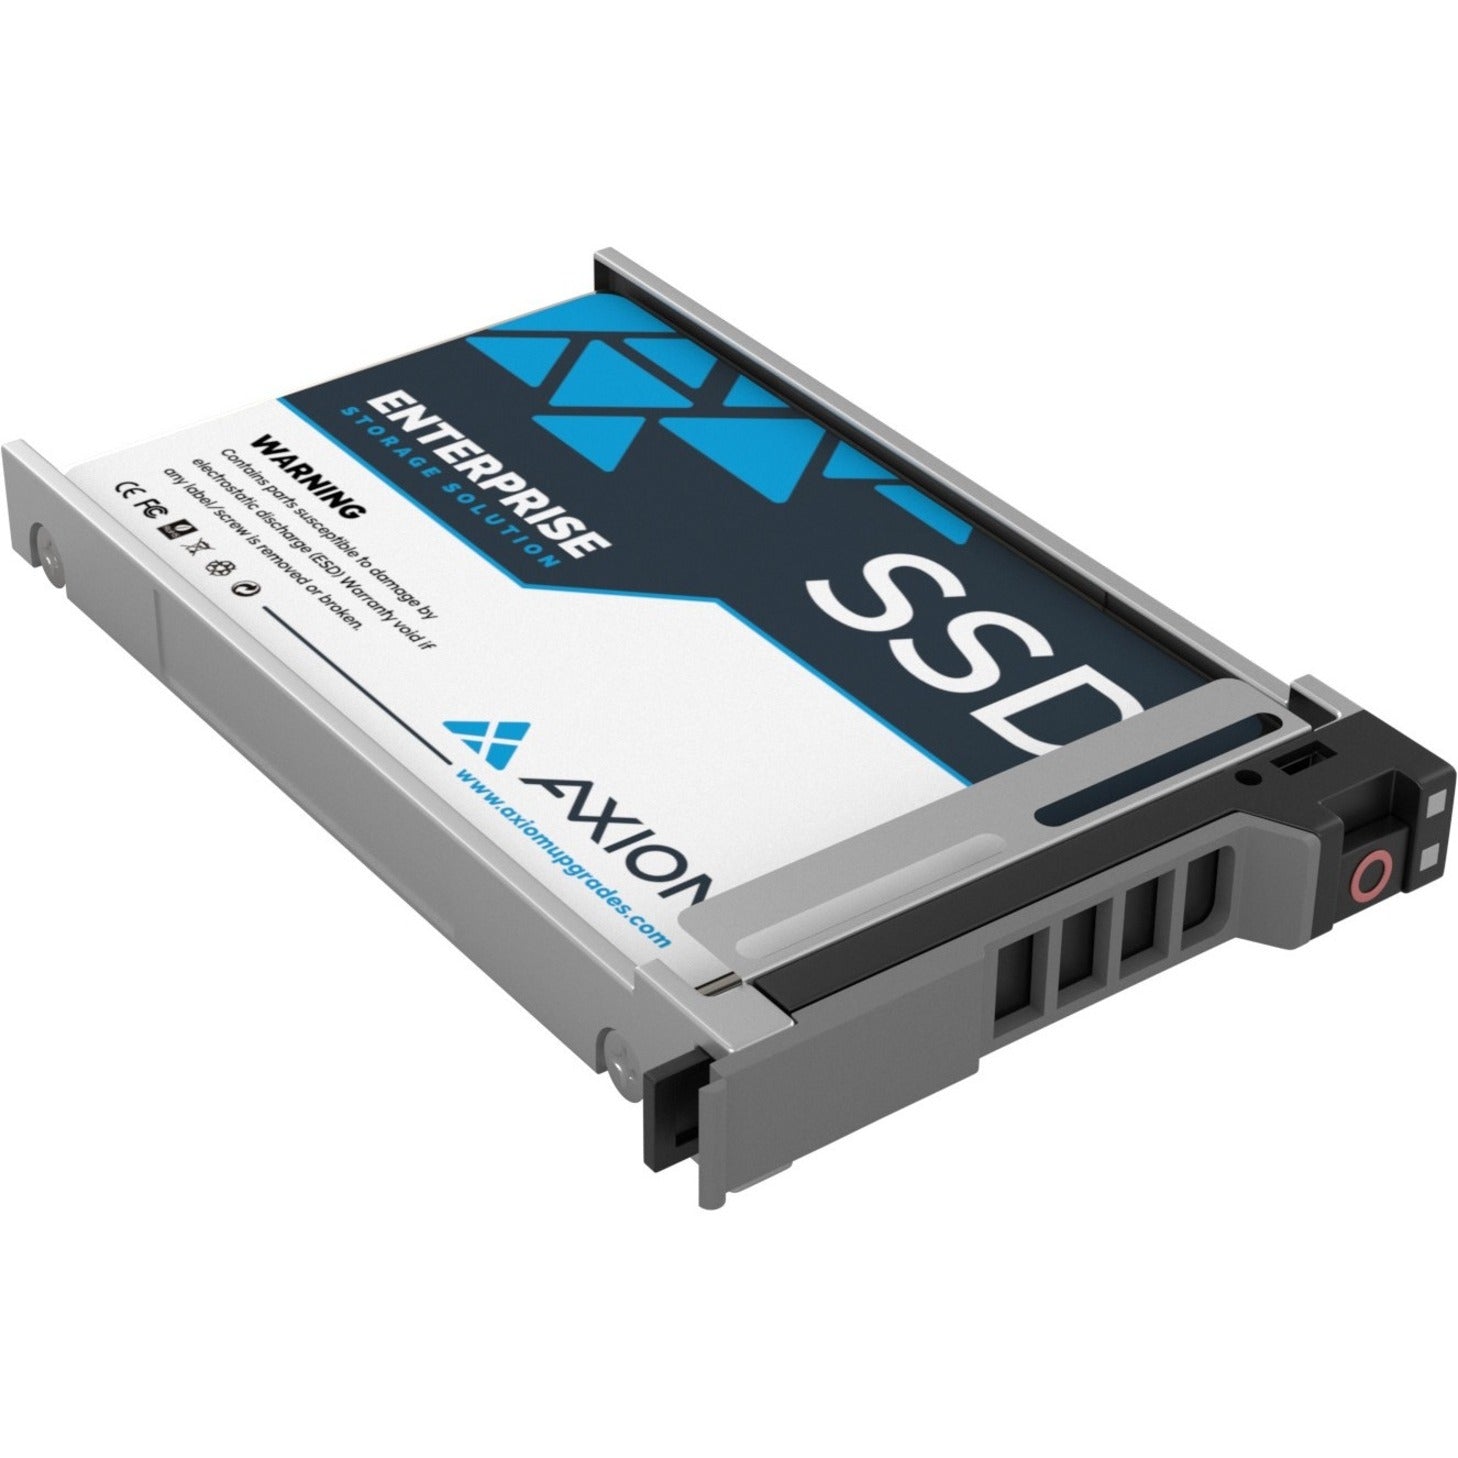 Axiom SSDEV20DV1T9-AX 2.5" Hot-Swap Enterprise Value EV200 SSD, 1.92TB SATA/600, 5 Year Warranty